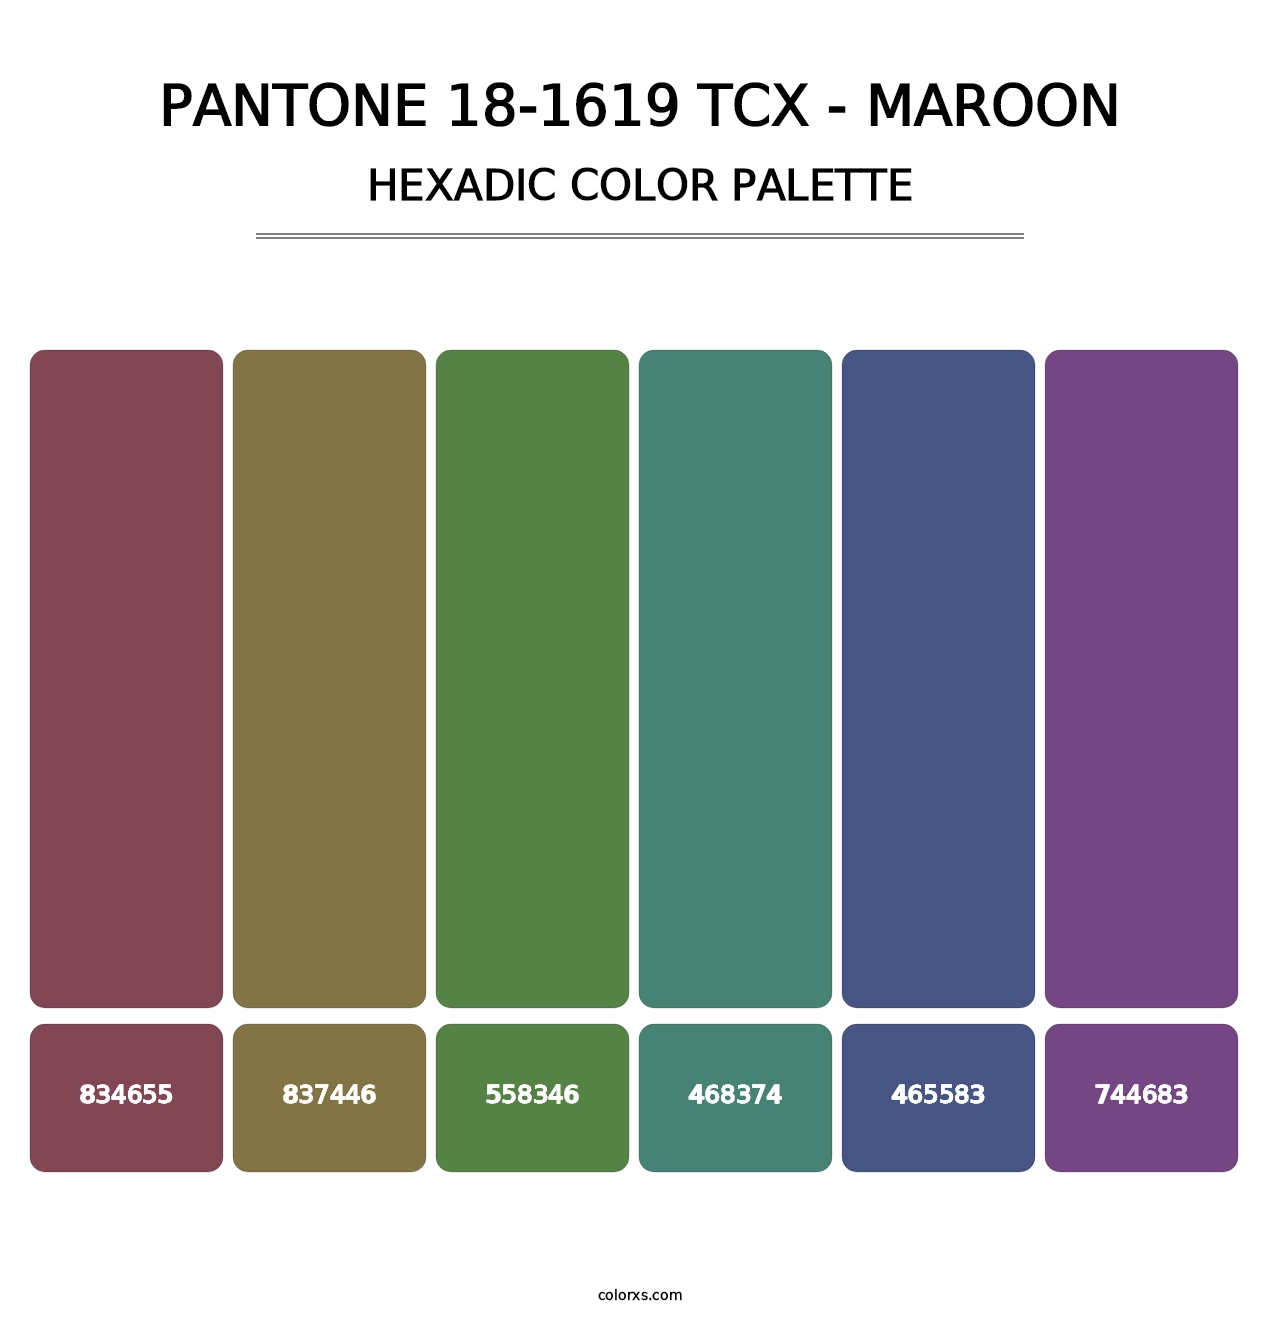 PANTONE 18-1619 TCX - Maroon - Hexadic Color Palette